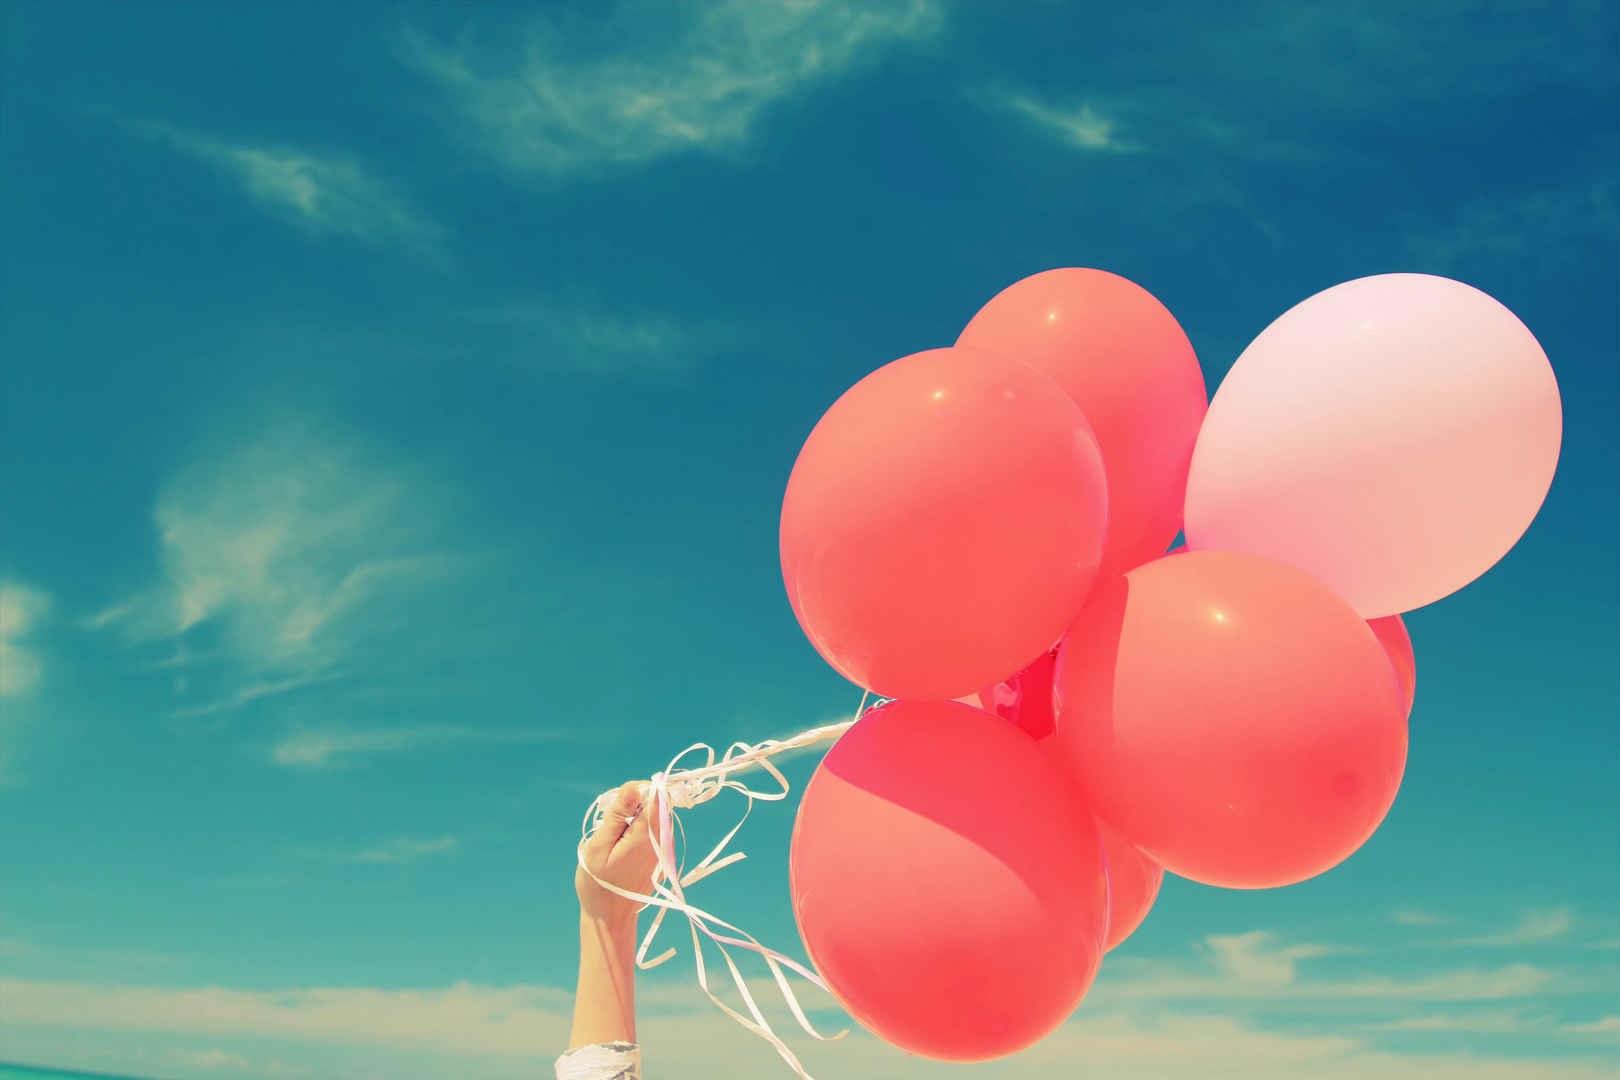 一个女孩手拿红气球举向蔚蓝色的天空-